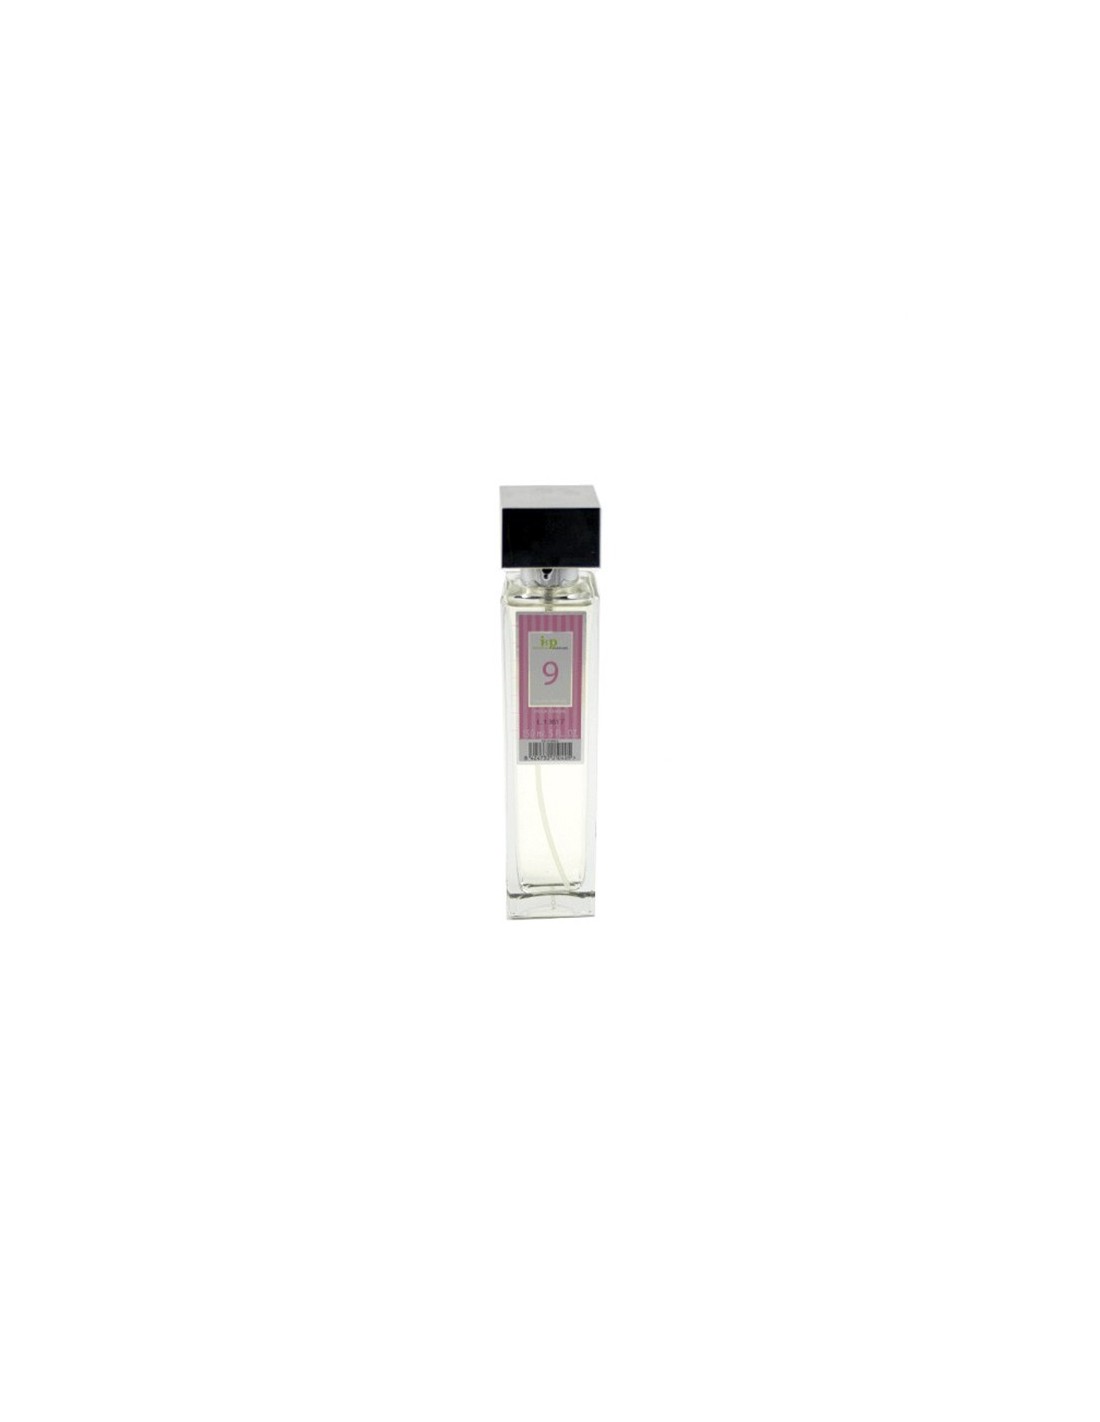 IAP Perfume Mujer N9 150ml